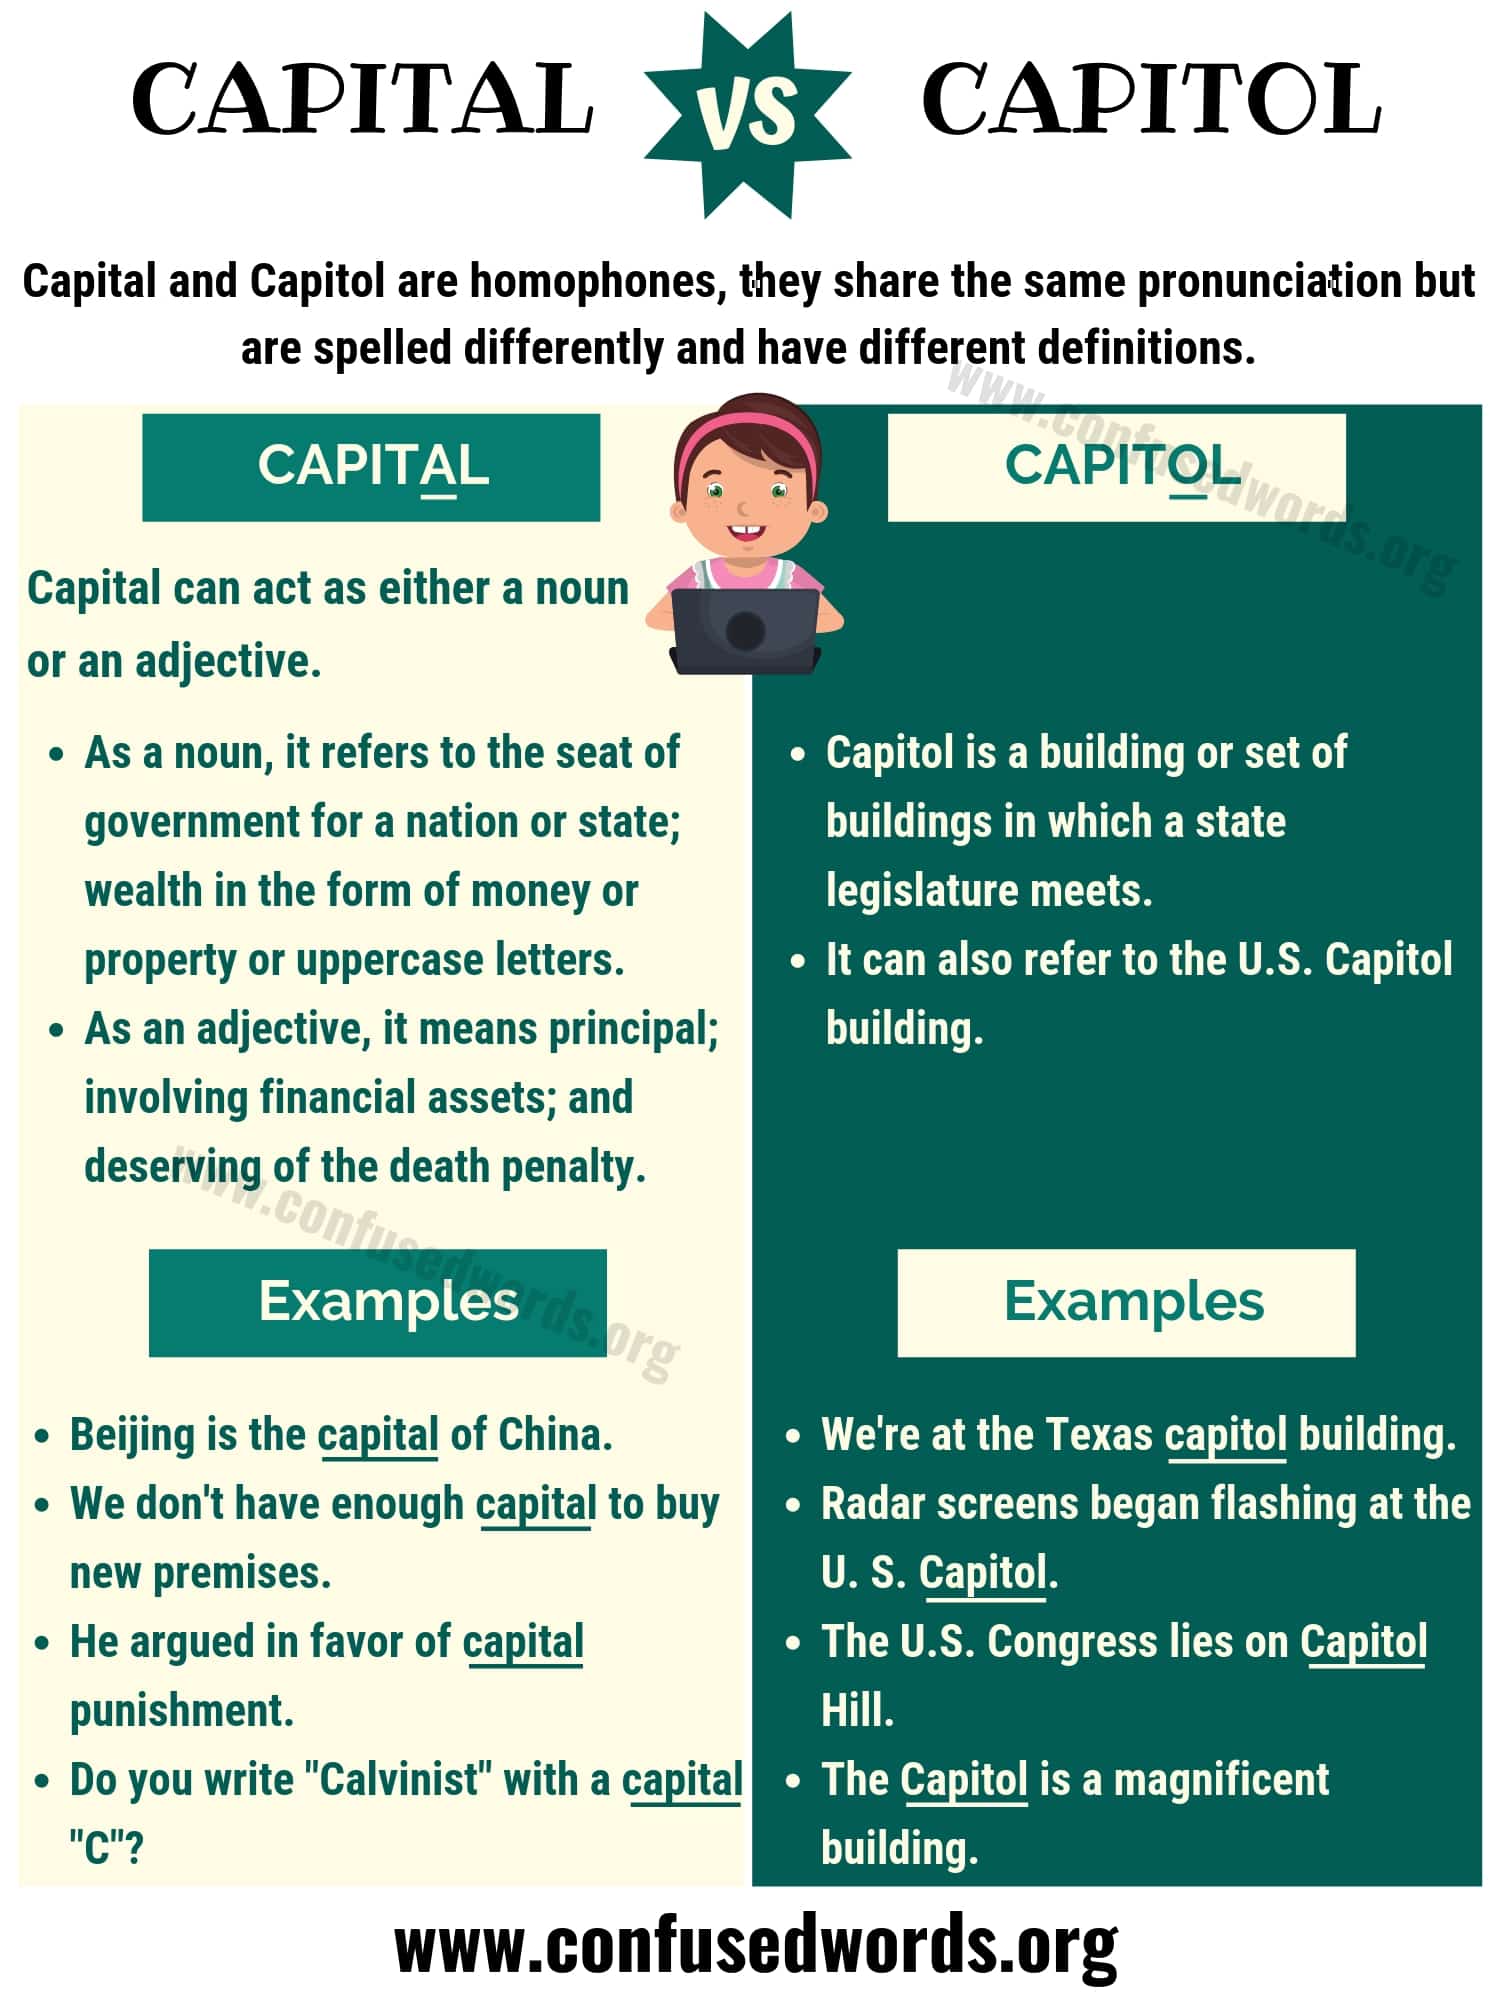 Capital vs. Capitol